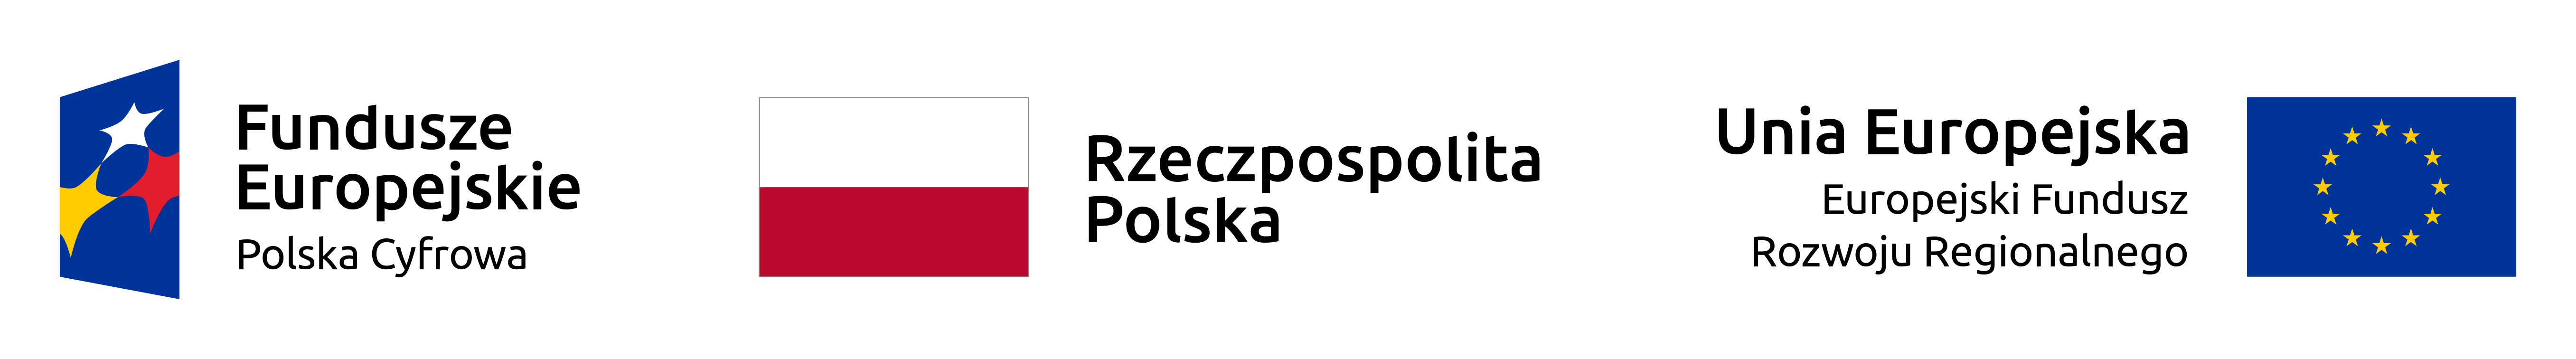 Loga Funduszy Europejskich, Rzeczpospolitej Polskiej i Unii Europejskiej